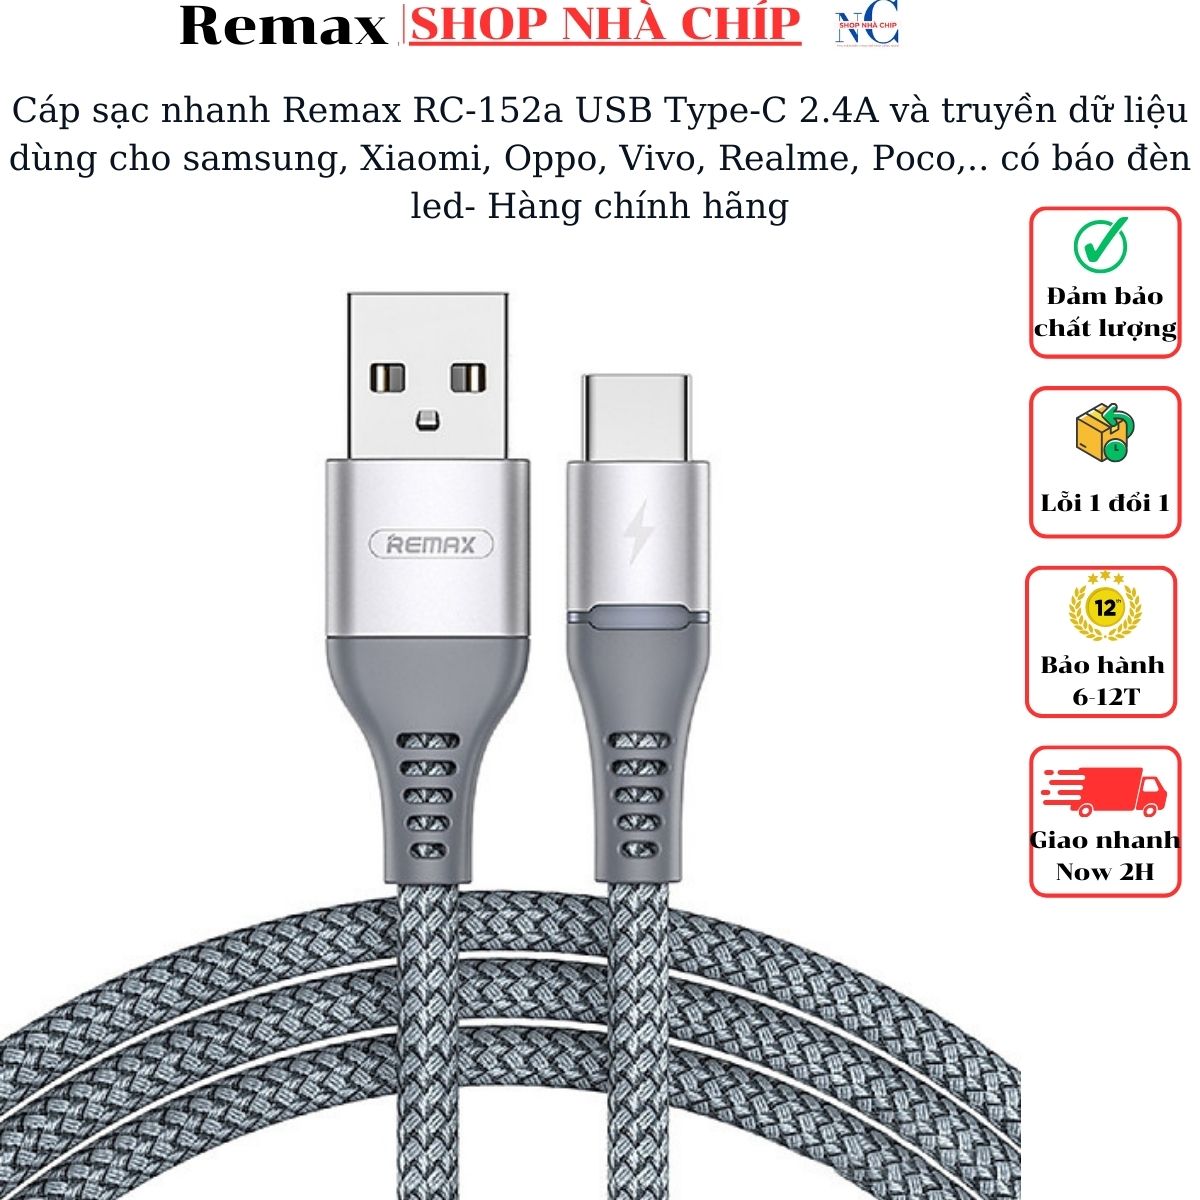 Cáp sạc nhanh Remax RC-152a USB Type-C 2.4A và truyền dữ liệu dùng cho samsung, Xiaomi, Oppo, Vivo, Realme, Poco,..  có báo đèn led- Hàng chính hãng